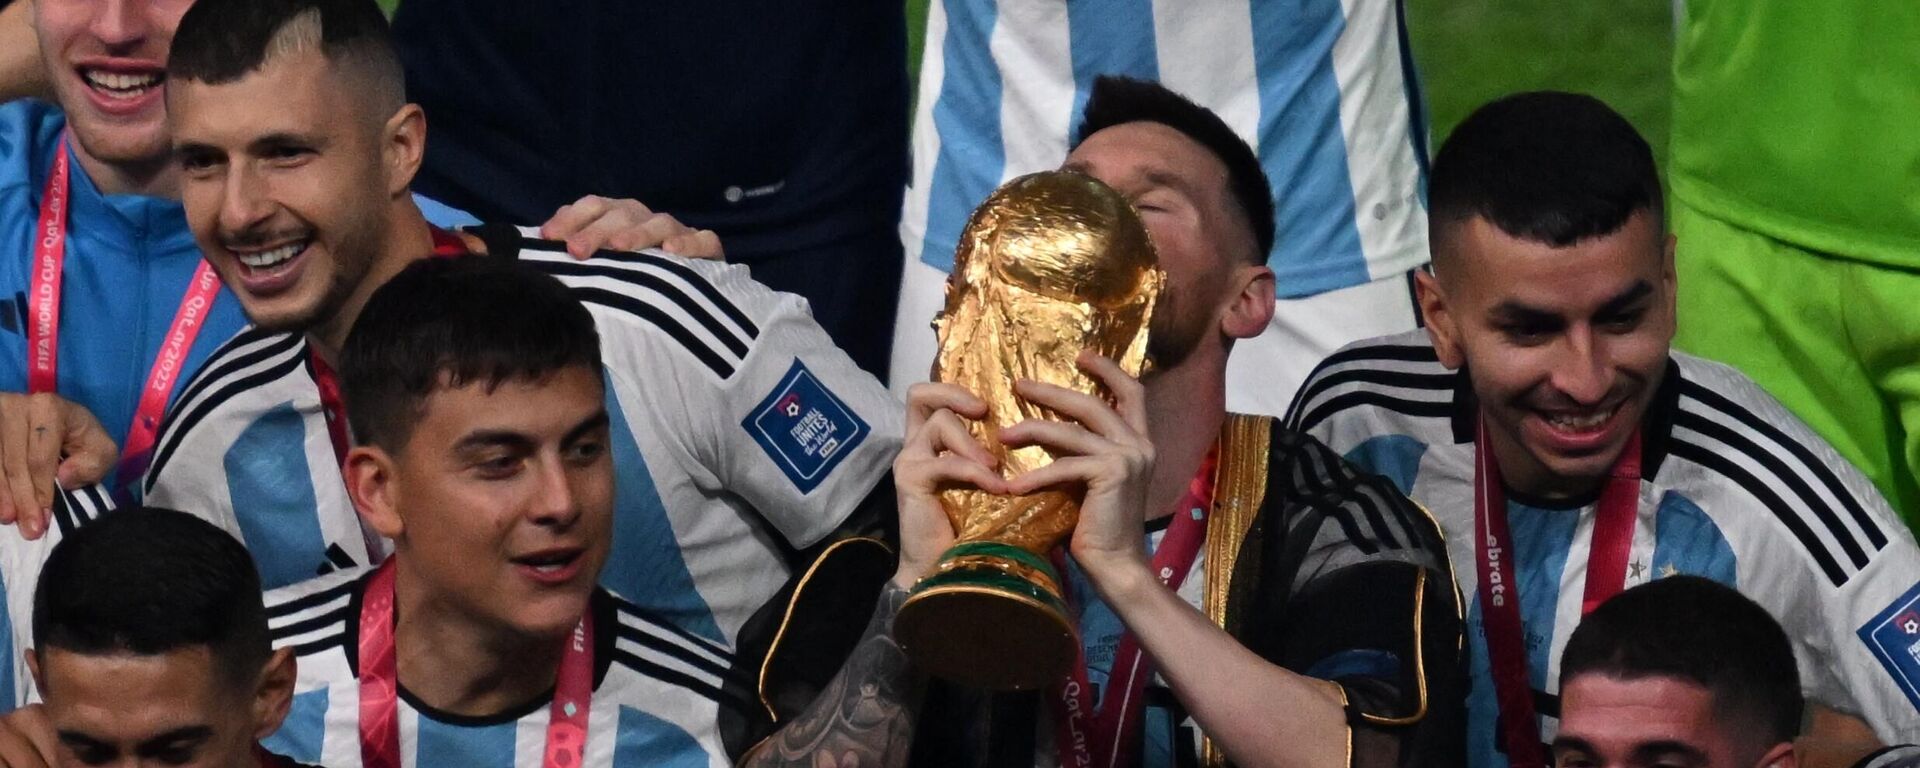 Cầu thủ Argentina Lionel Messi tại lễ trao giải cho những người chiến thắng tại World Cup bóng đá. - Sputnik Việt Nam, 1920, 20.12.2022